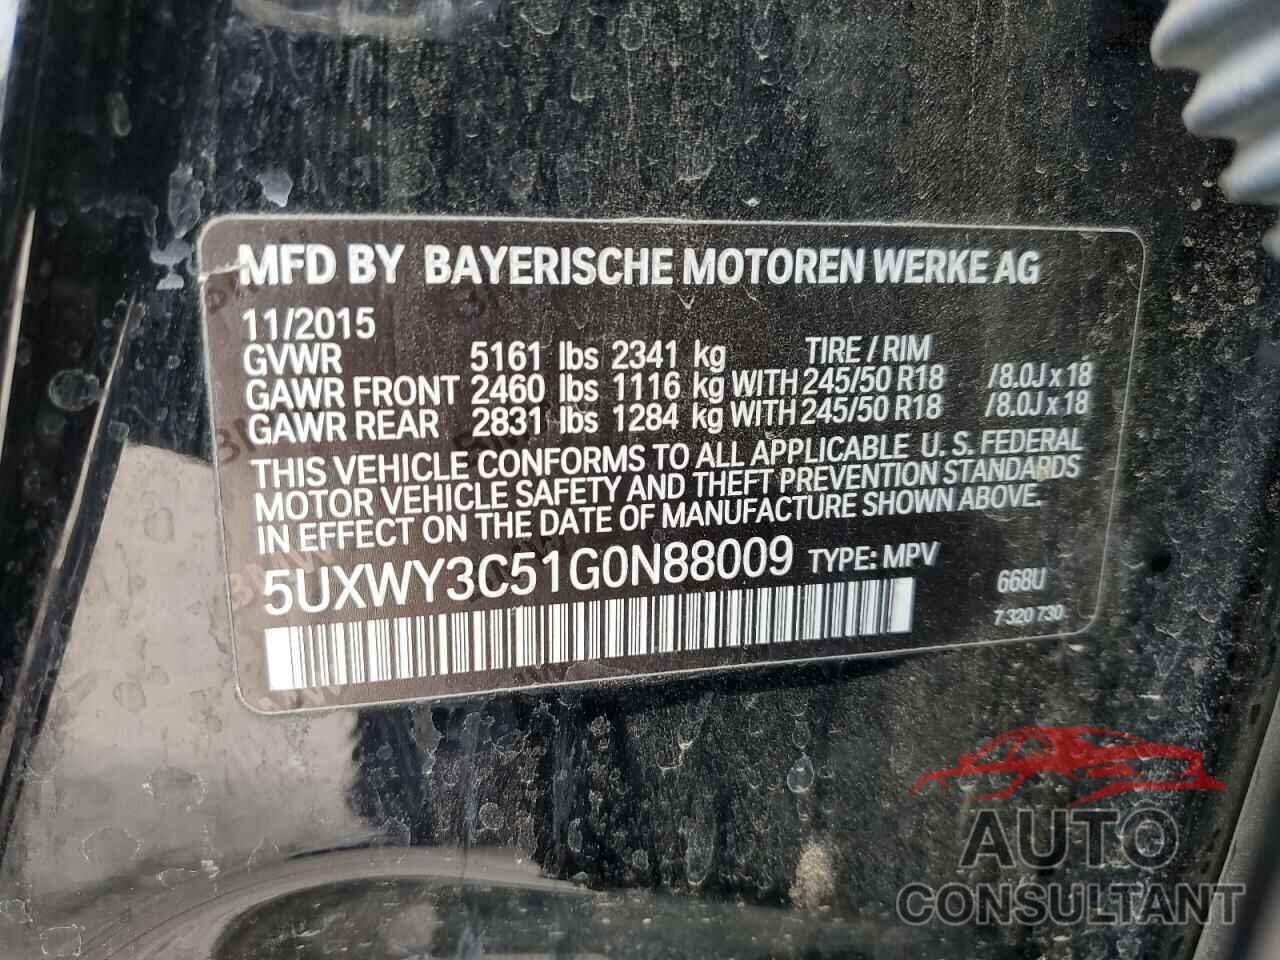 BMW X3 2016 - 5UXWY3C51G0N88009